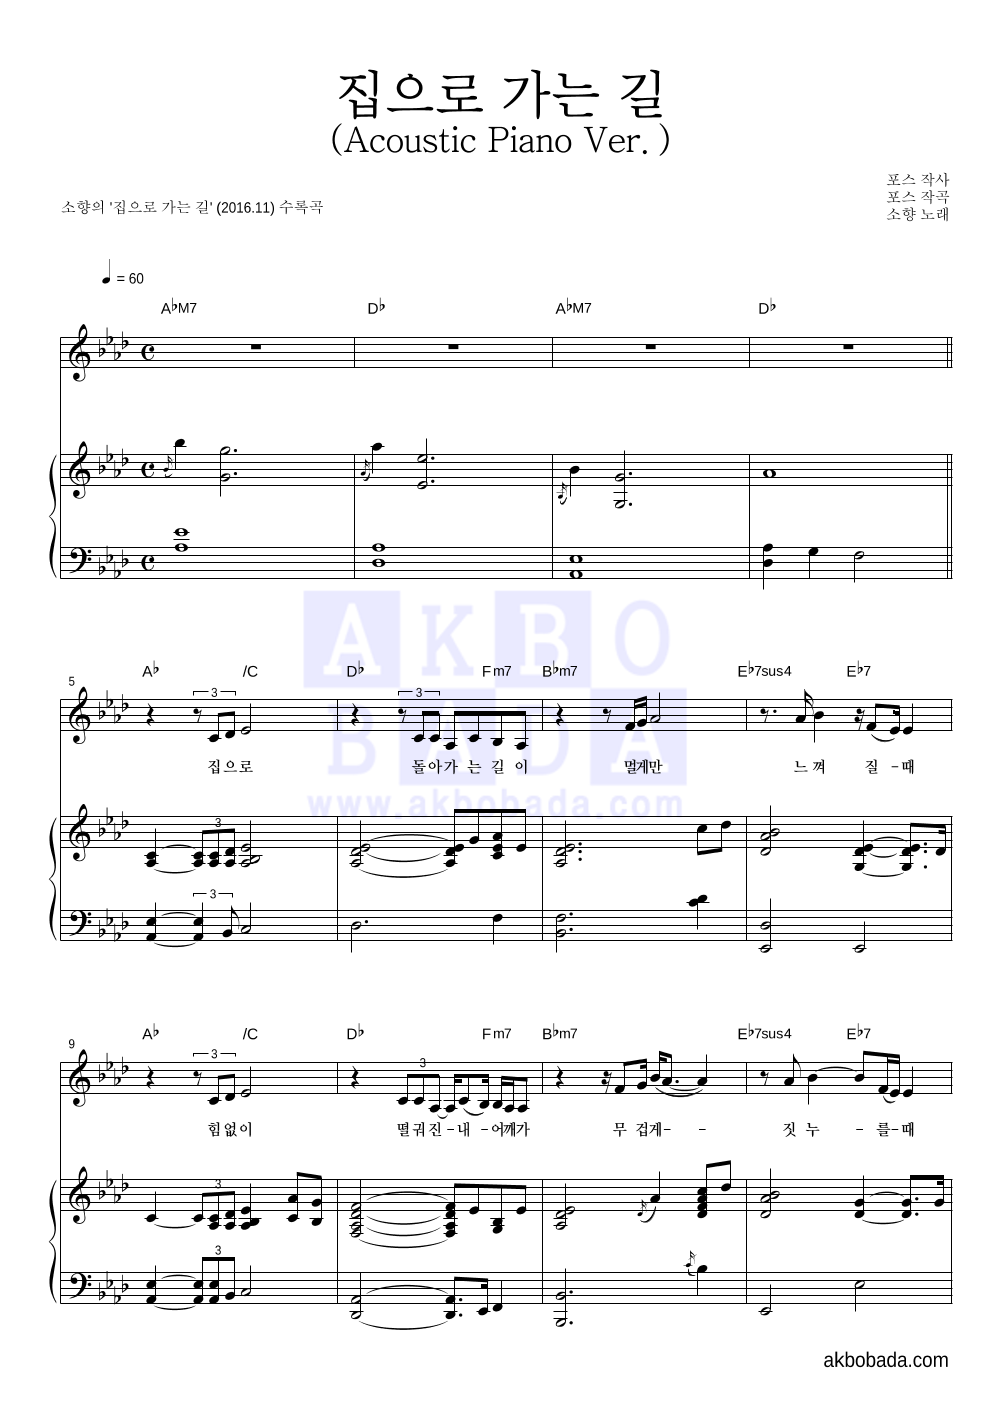 소향 - 집으로 가는 길 (Acoustic Piano Ver.) 피아노 3단 악보 